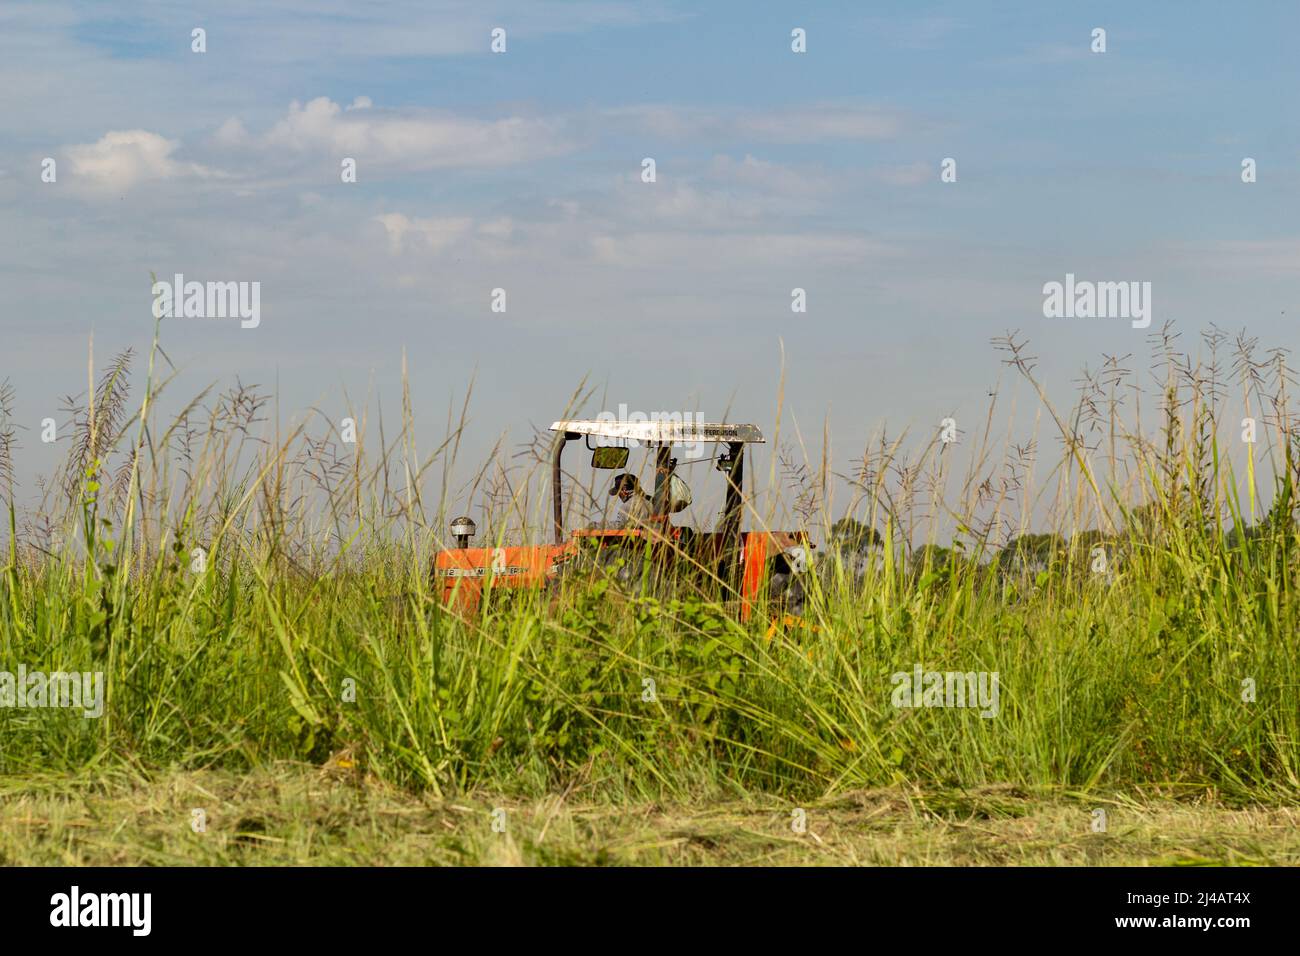 Goiânia, Goias, Brasilien – 12. April 2022: Ein Traktor, der mitten in viel Gras arbeitet, mit dem Himmel im Hintergrund. Stockfoto